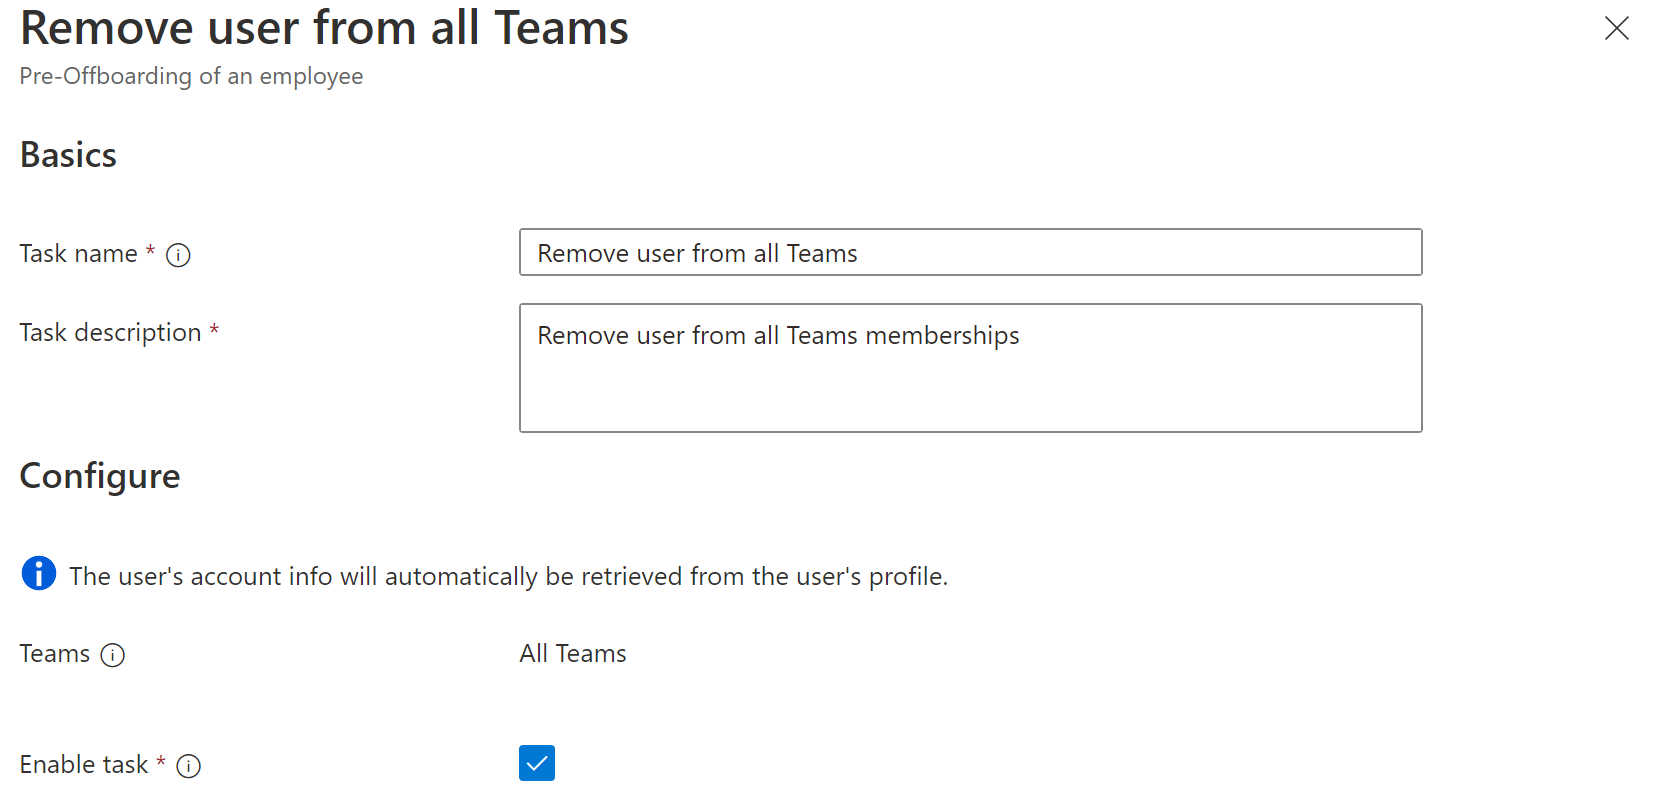 Снимок экрана задачи рабочего процесса: удаление пользователя из всех команд.